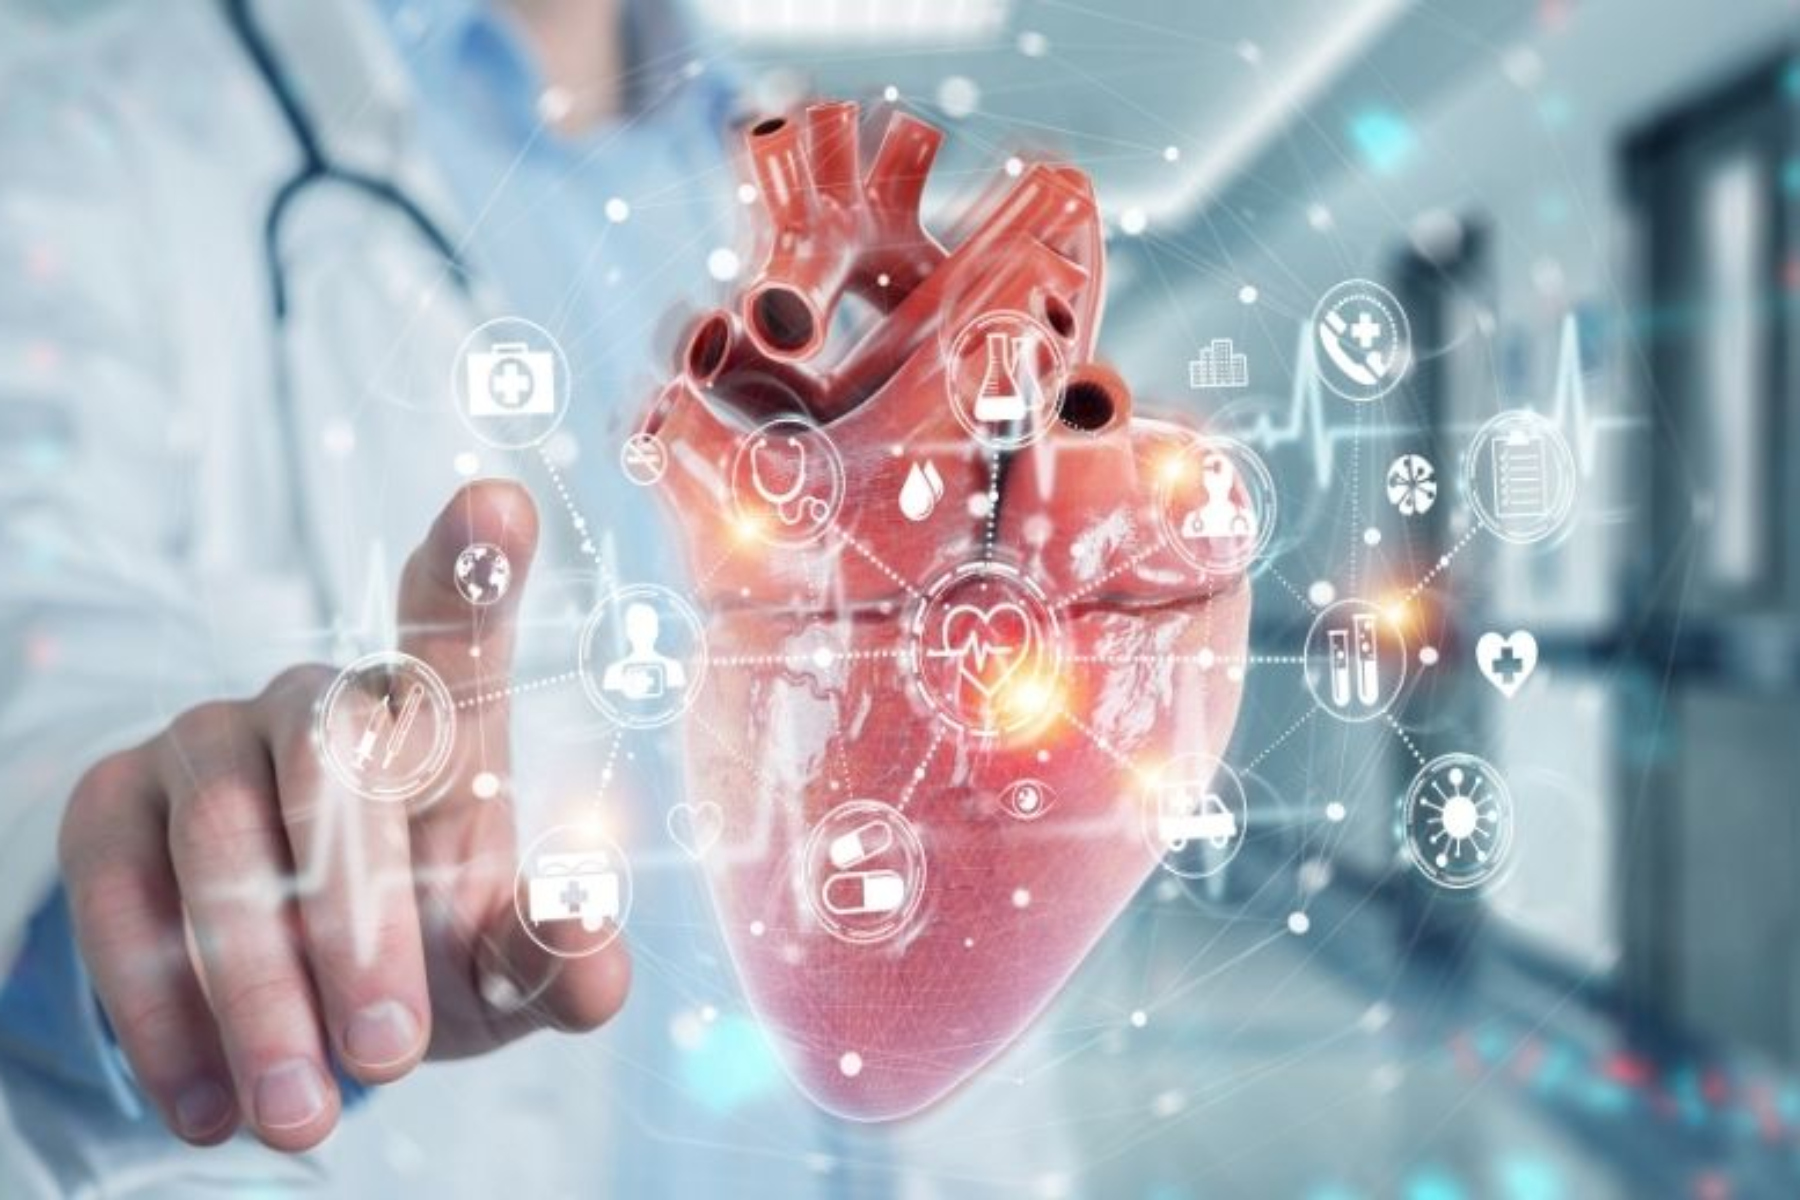 Καρδιακή προσβολή: Πώς η καρδιακή προσβολή μπορεί να αντιμετωπισθεί με τη χρήση της τεχνολογίας;